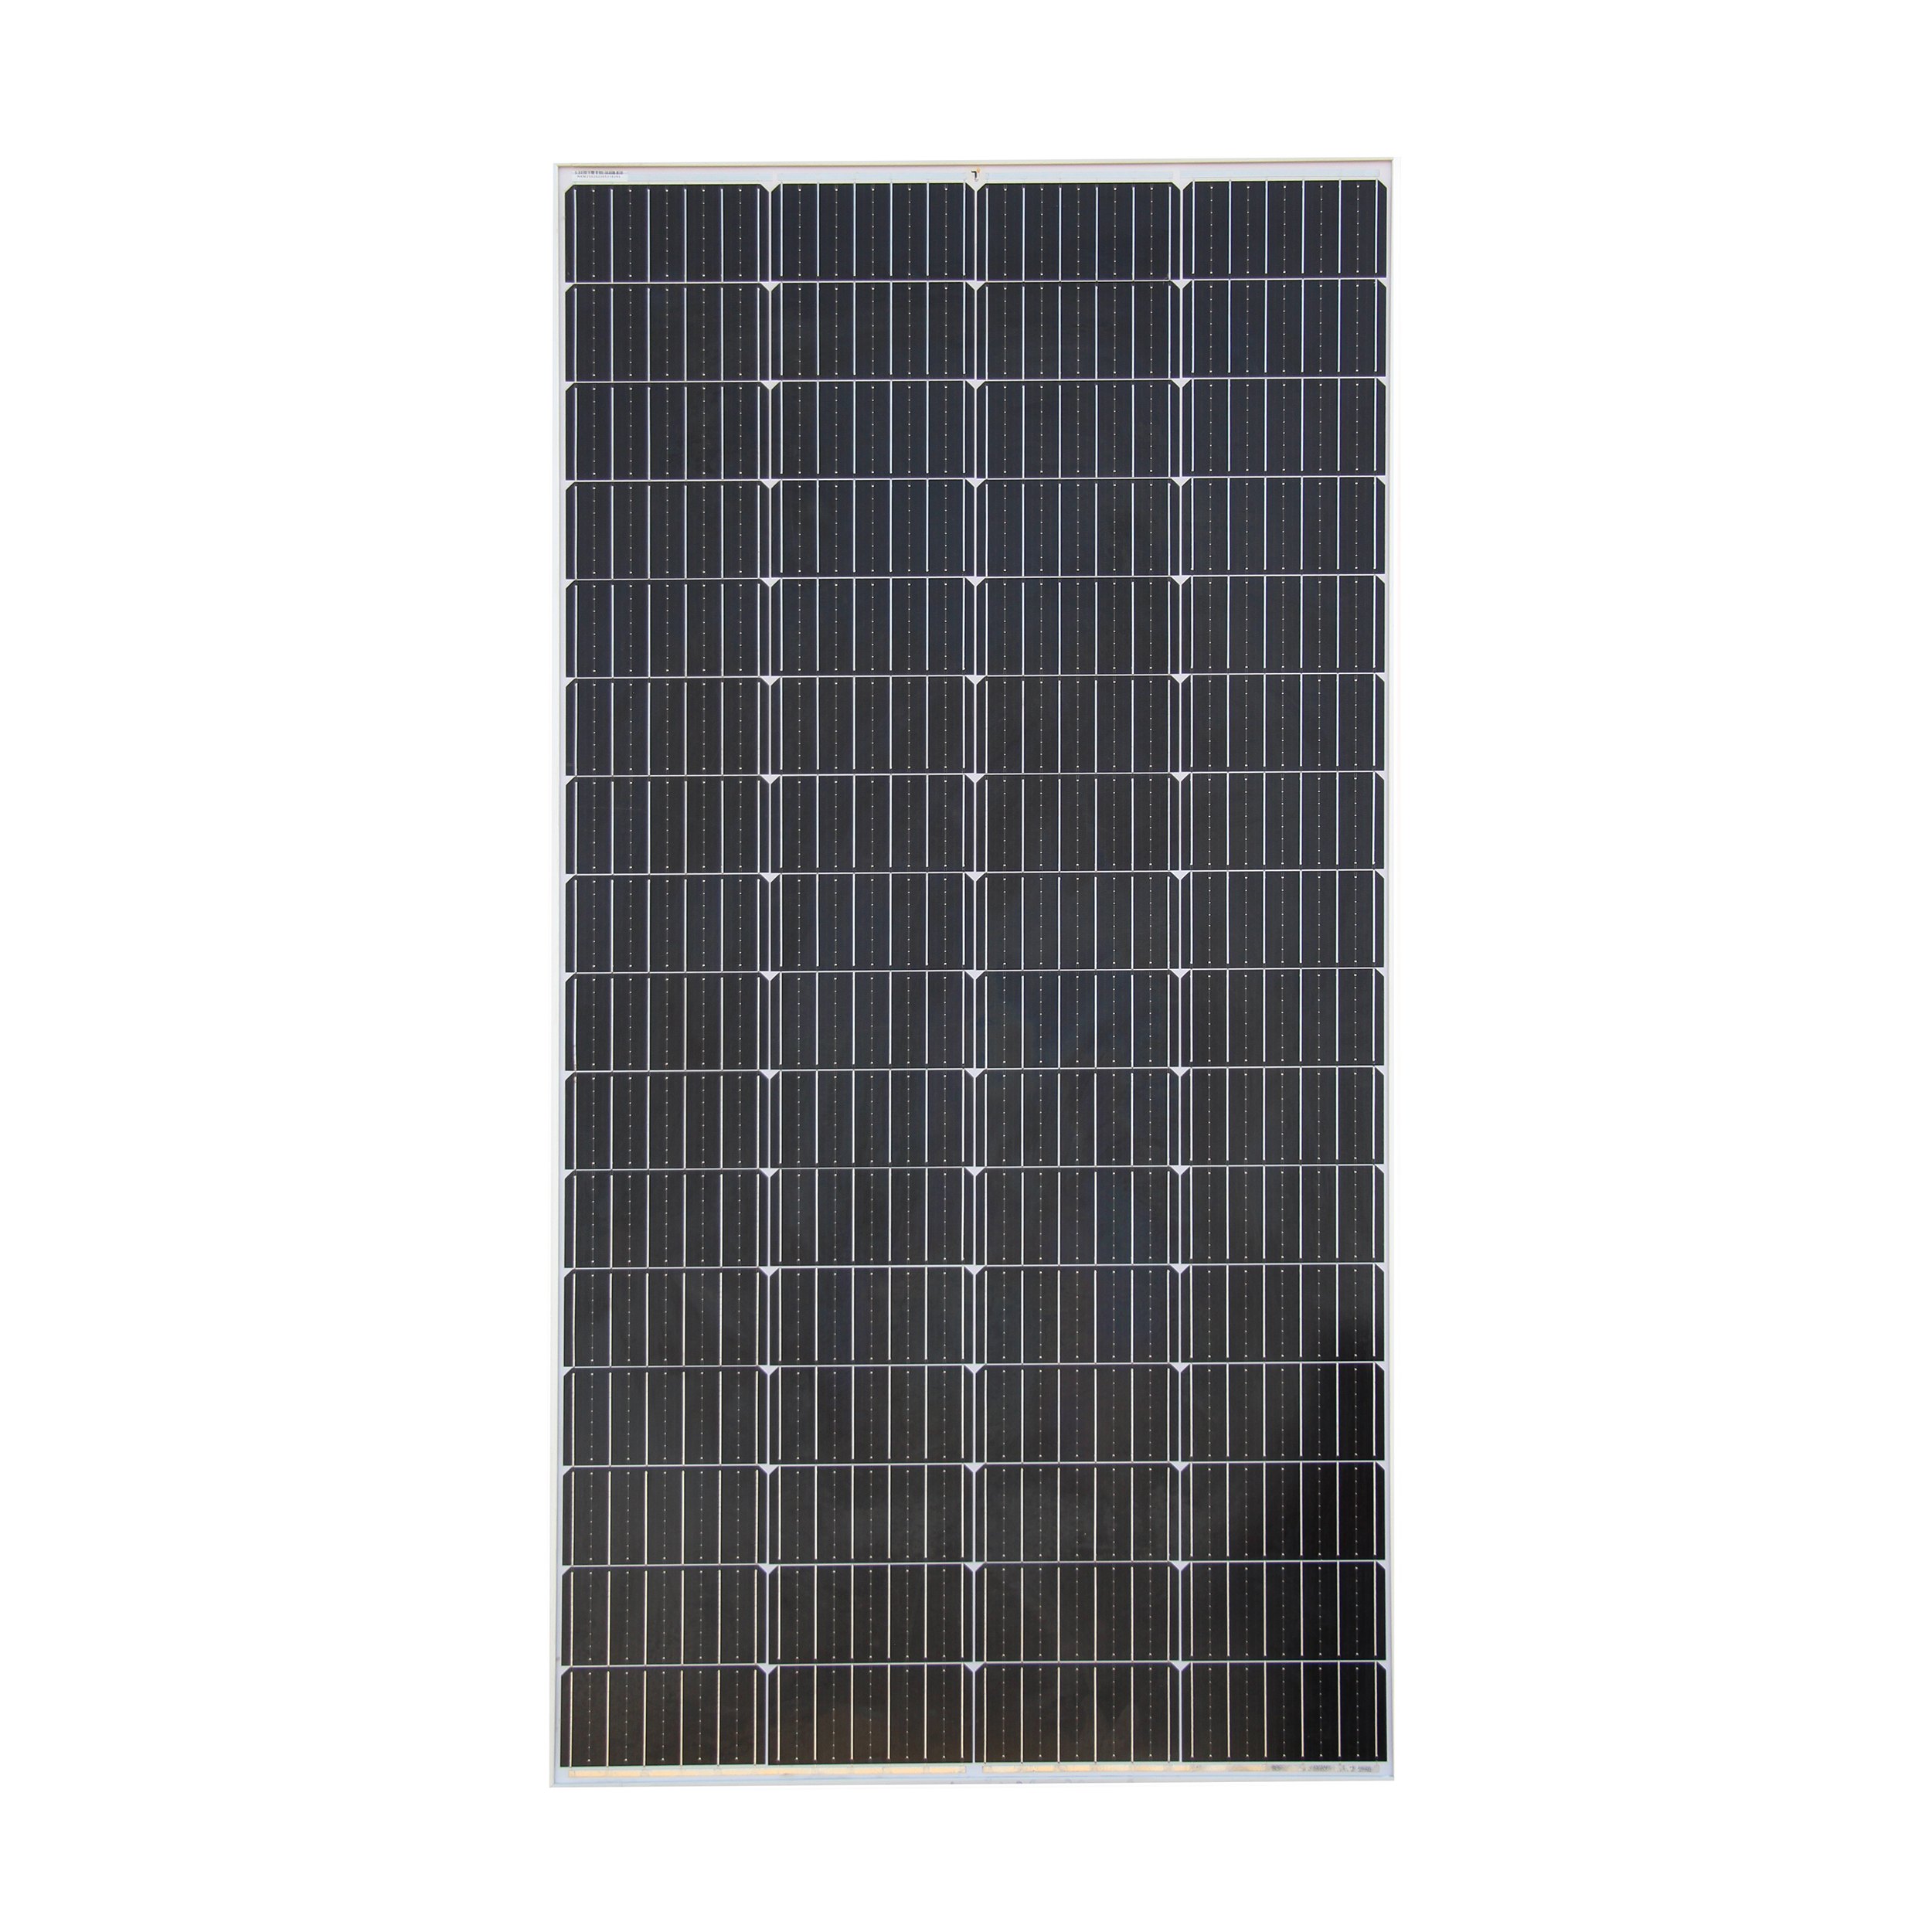 نکته خرید - قیمت روز پنل خورشیدی تیسو مدل TM250W-36V ظرفیت 250 وات خرید